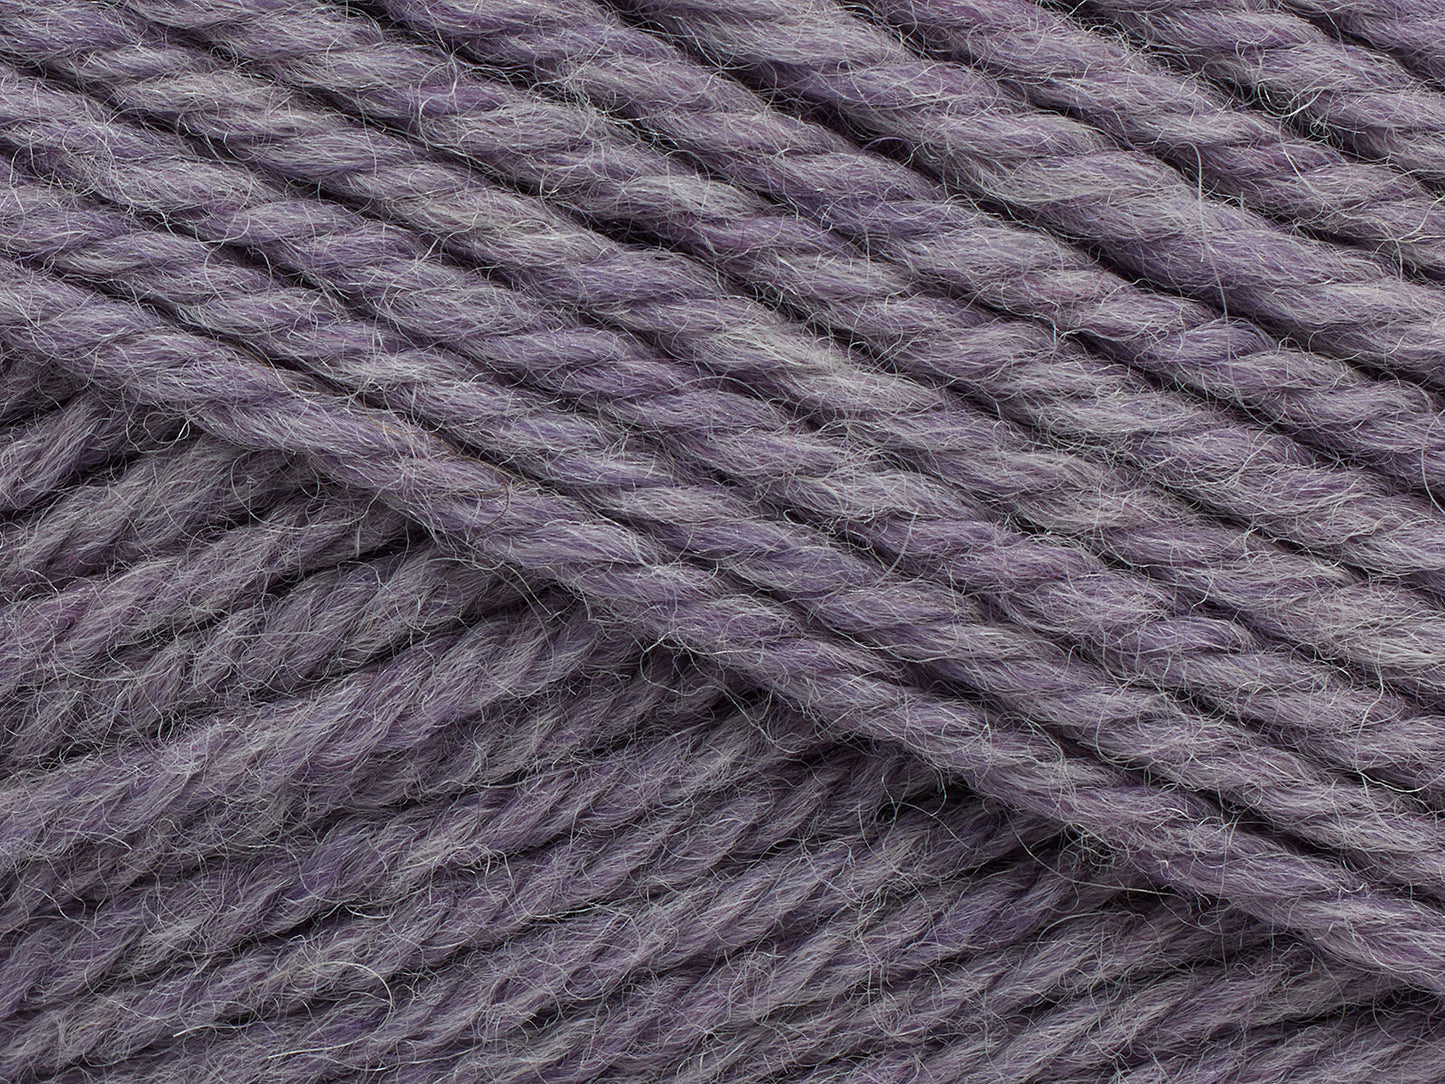 815 Lavender Grey (melange)